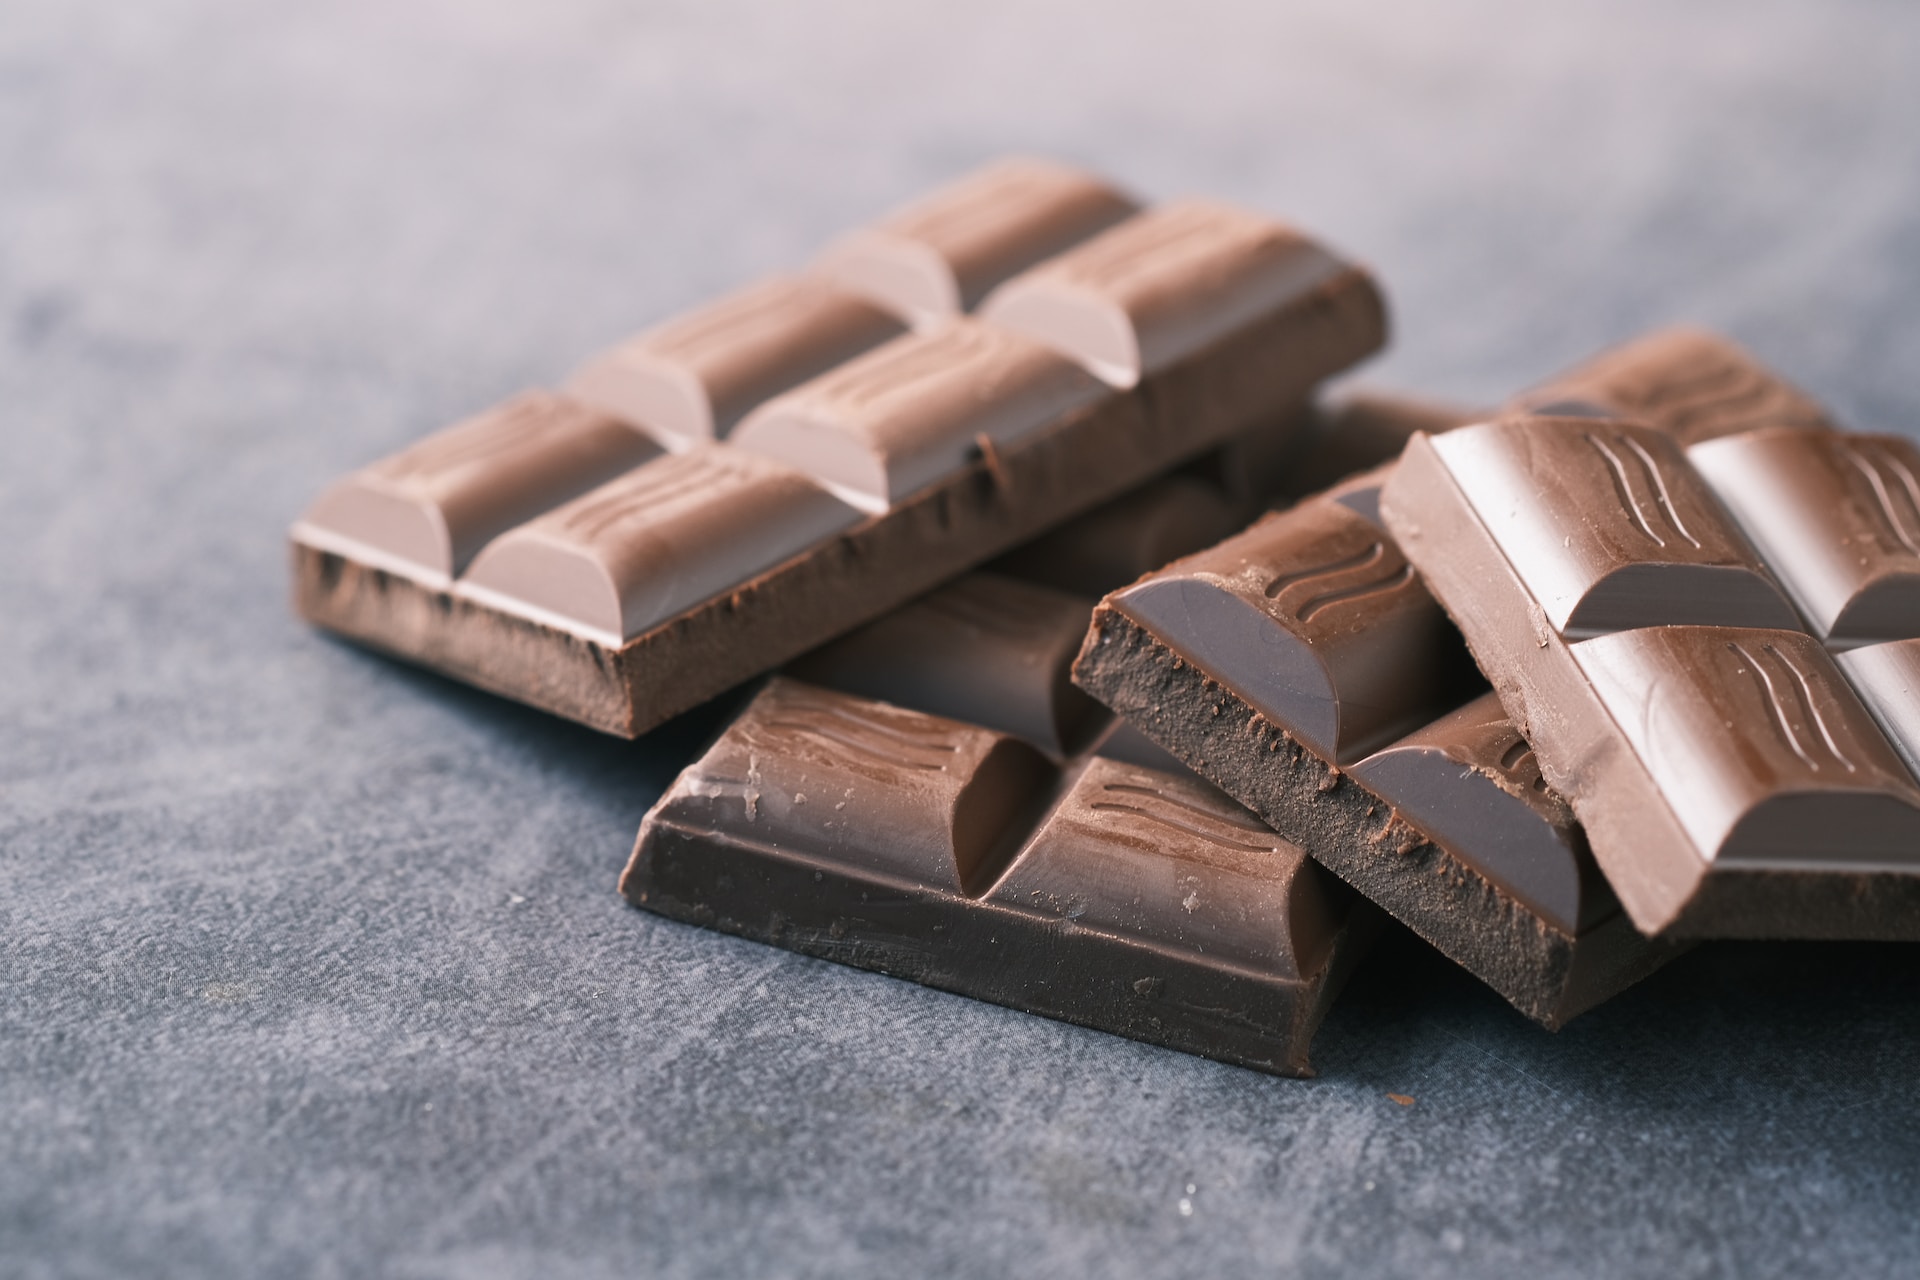 चॉकलेट्स के बारे में 10 रोचक तथ्य|